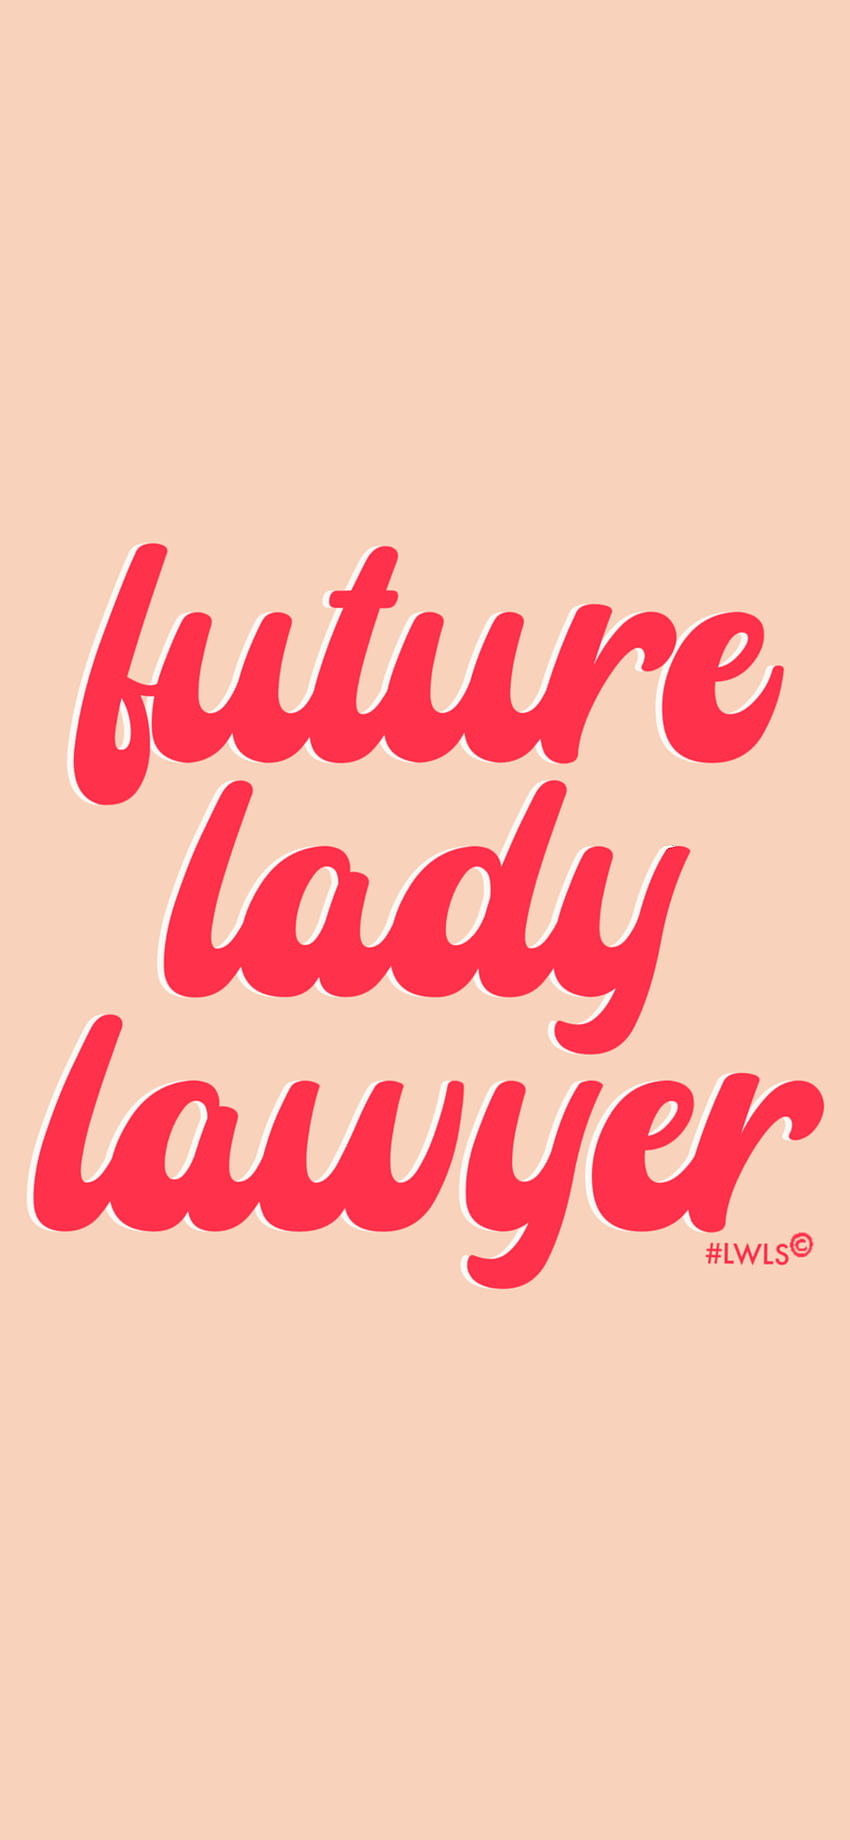 Ladies Who Law School Tech – Ladies Who Law School, LLC, lawyer women HD phone wallpaper